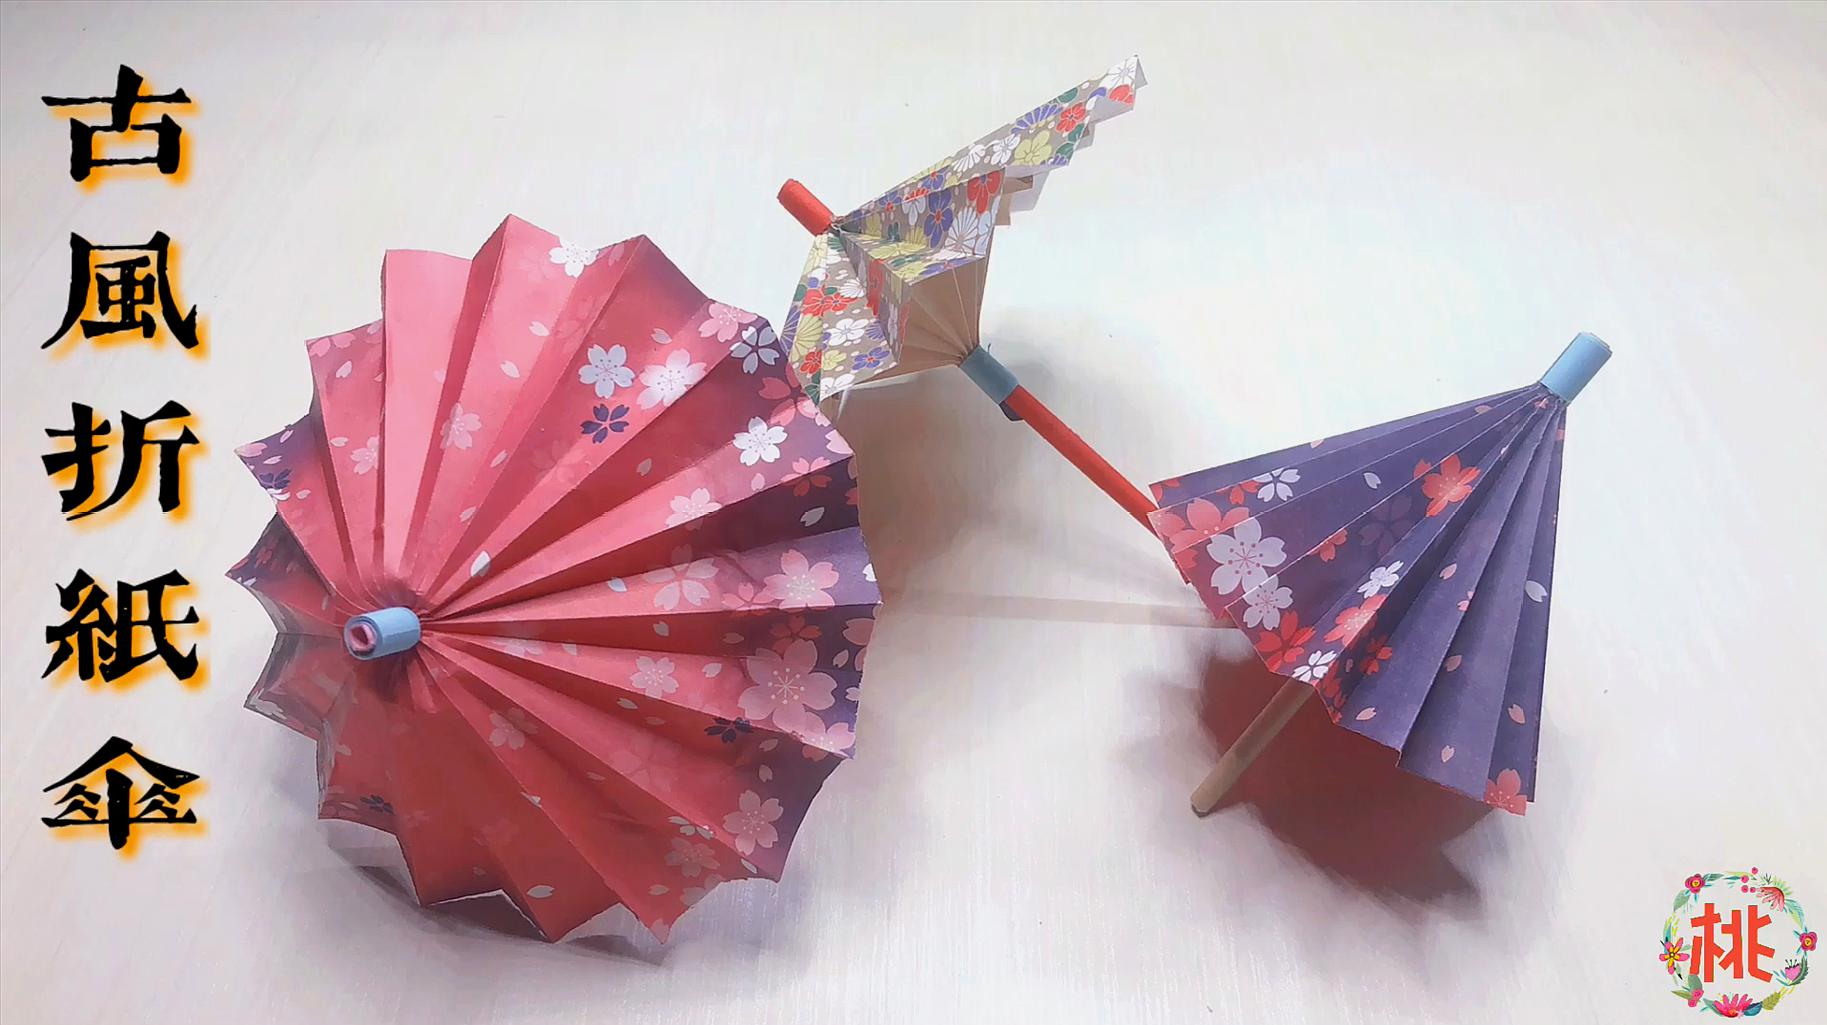 07:29  来源:好看视频-手工小雨伞的折法,简单又漂亮的雨伞折纸教程